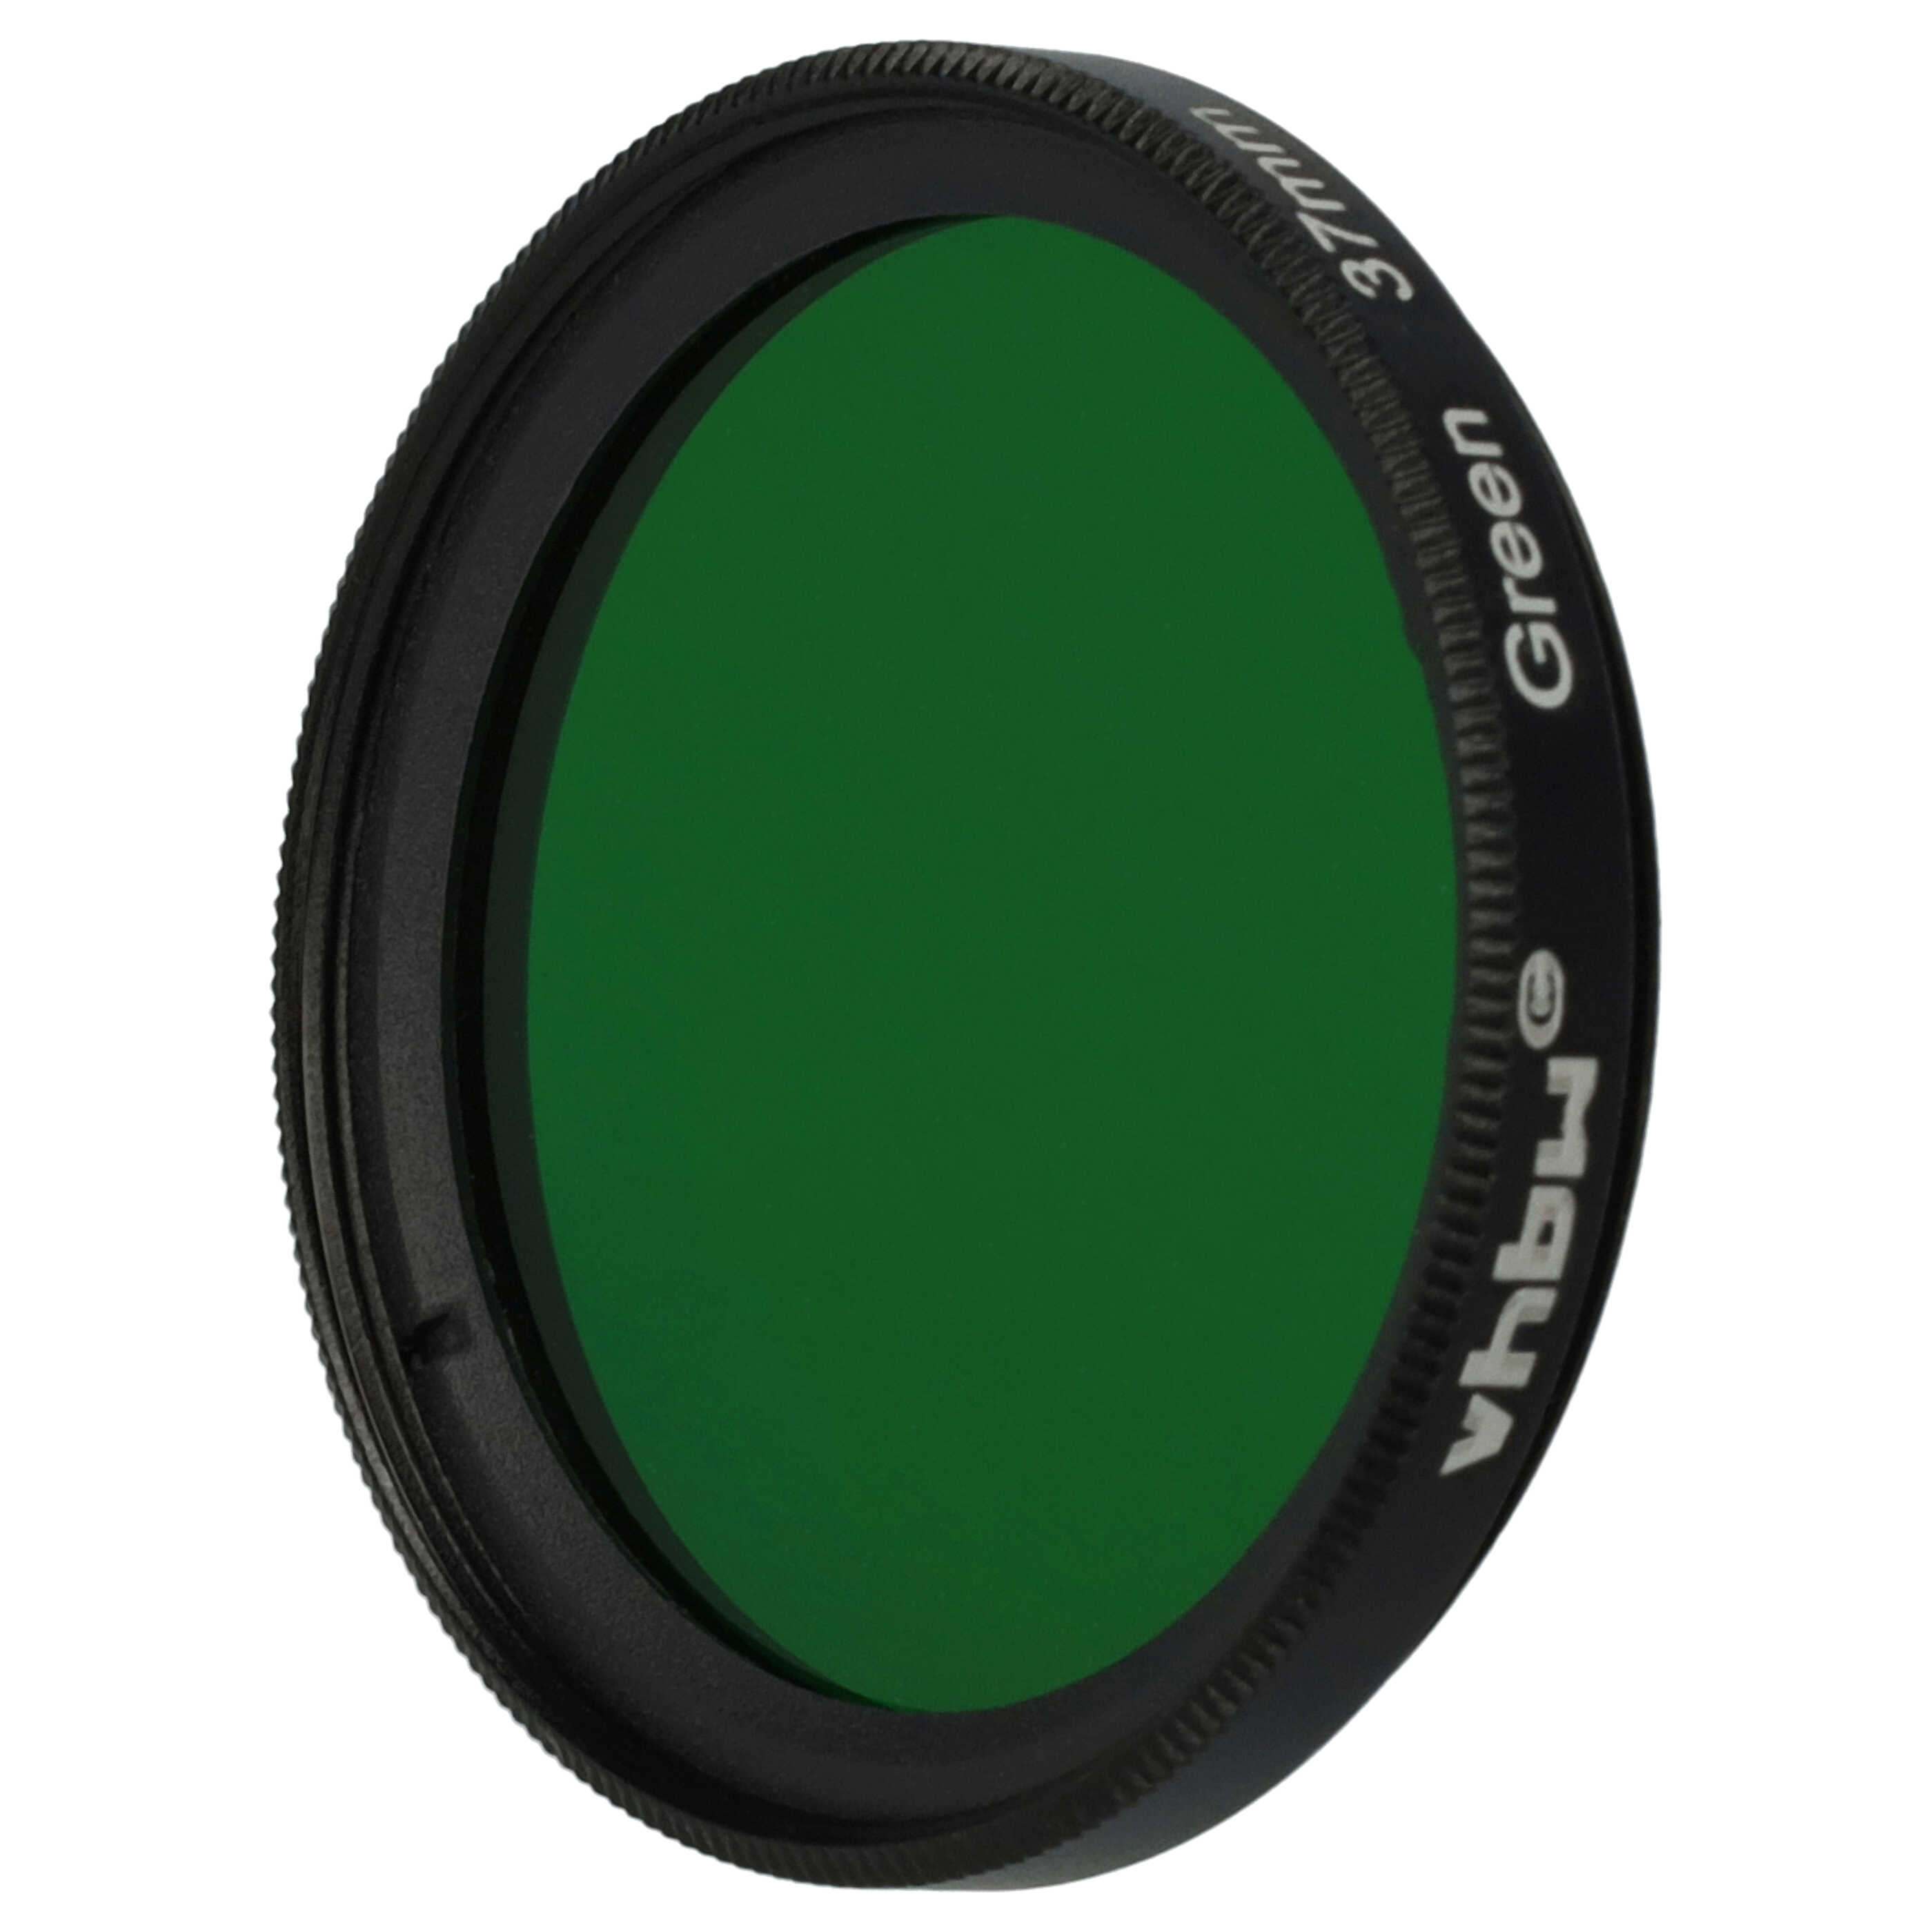 Filtr fotograficzny na obiektywy z gwintem 37 mm - filtr zielony